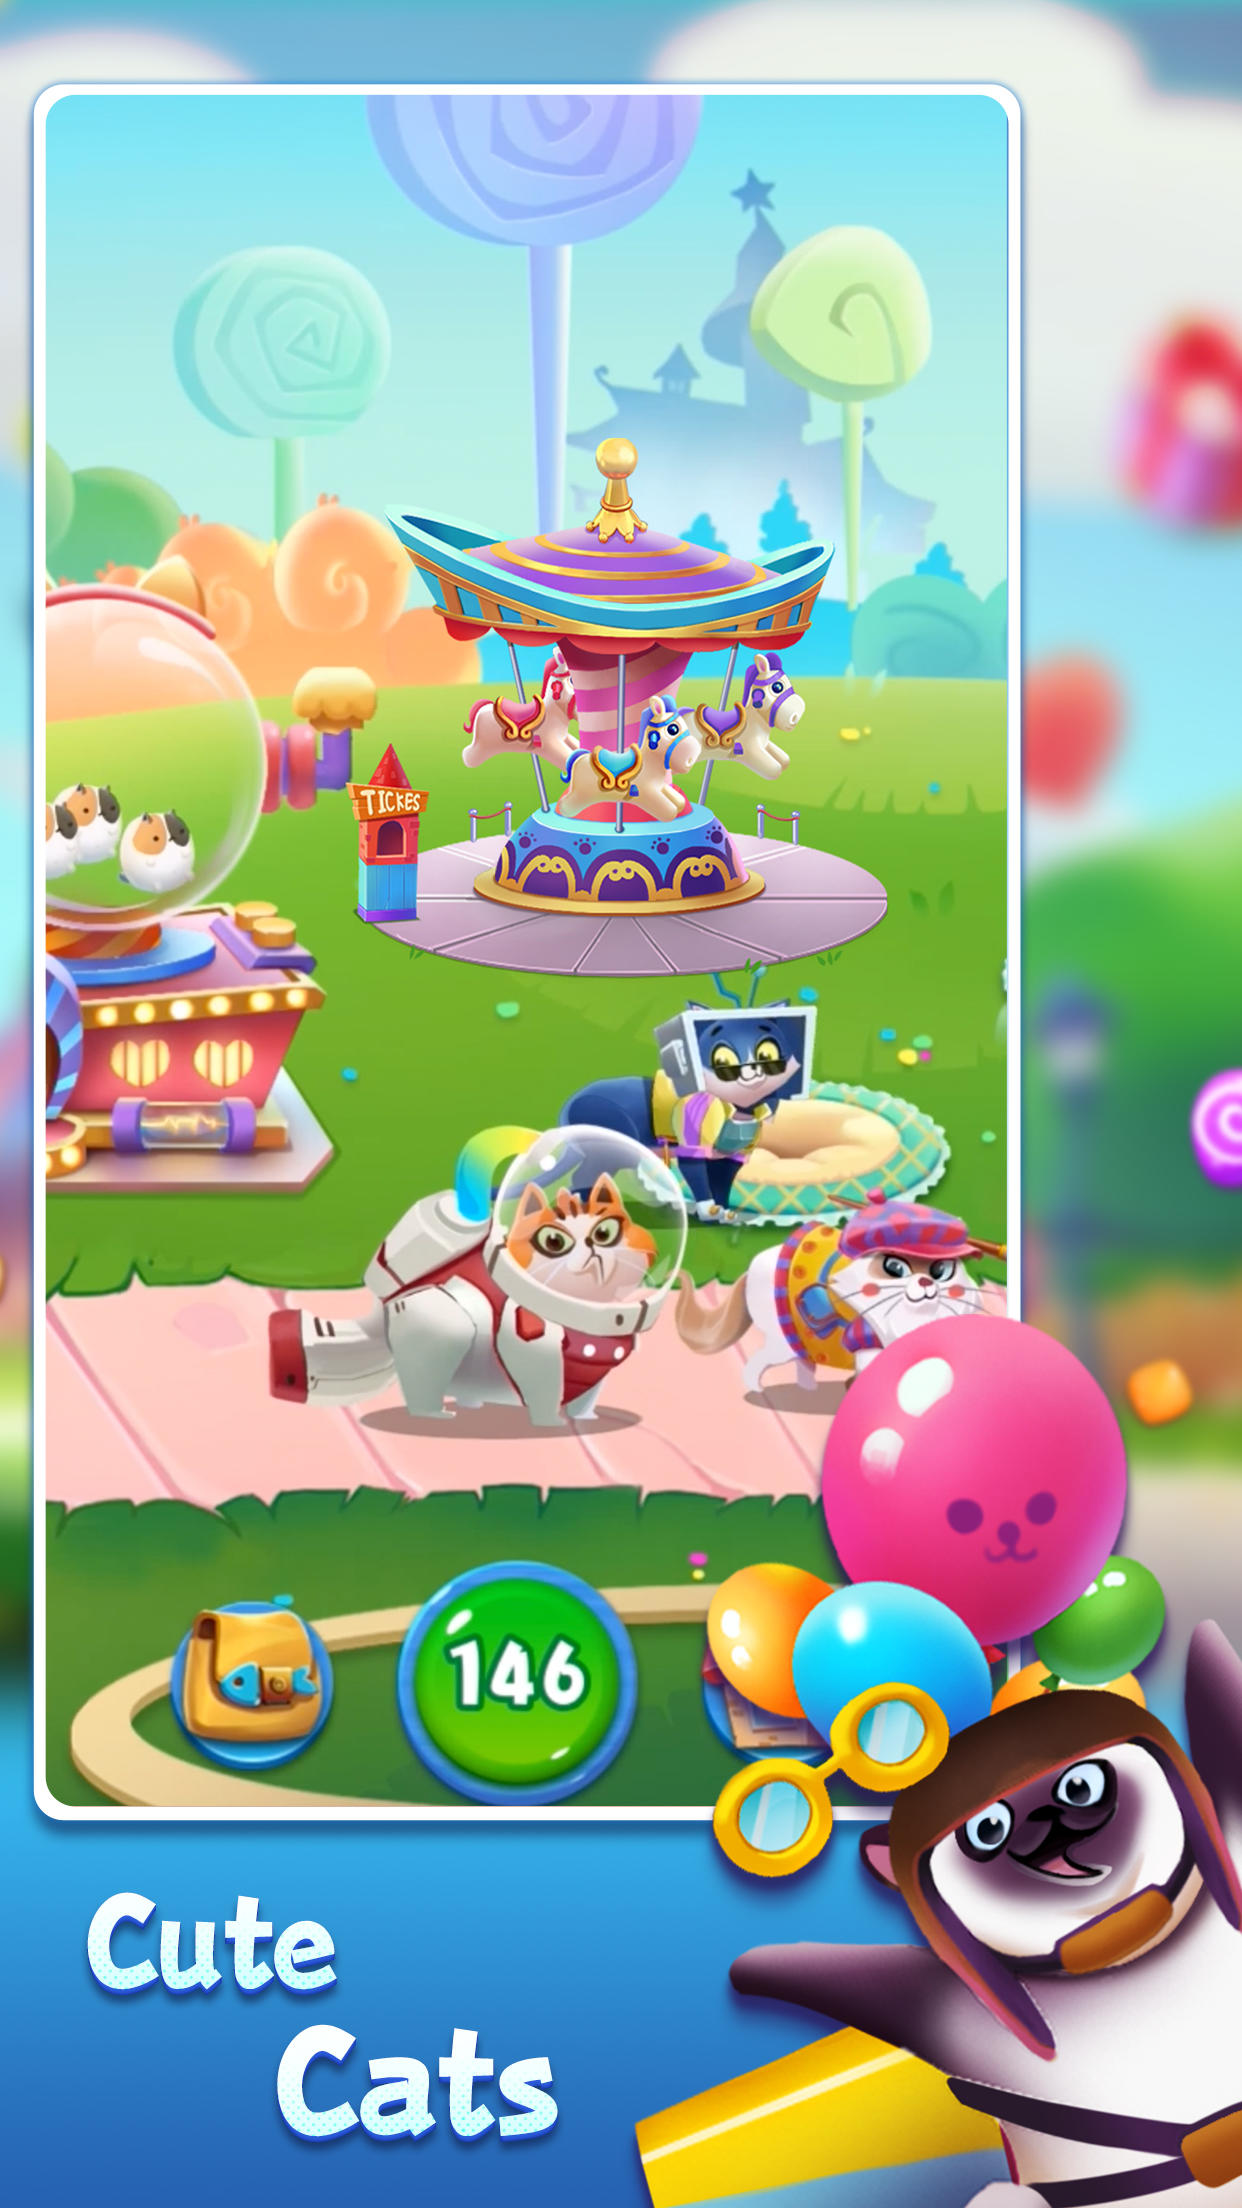 Screenshot 1 of Candy Cat - Pet match 3 games 3.1.4